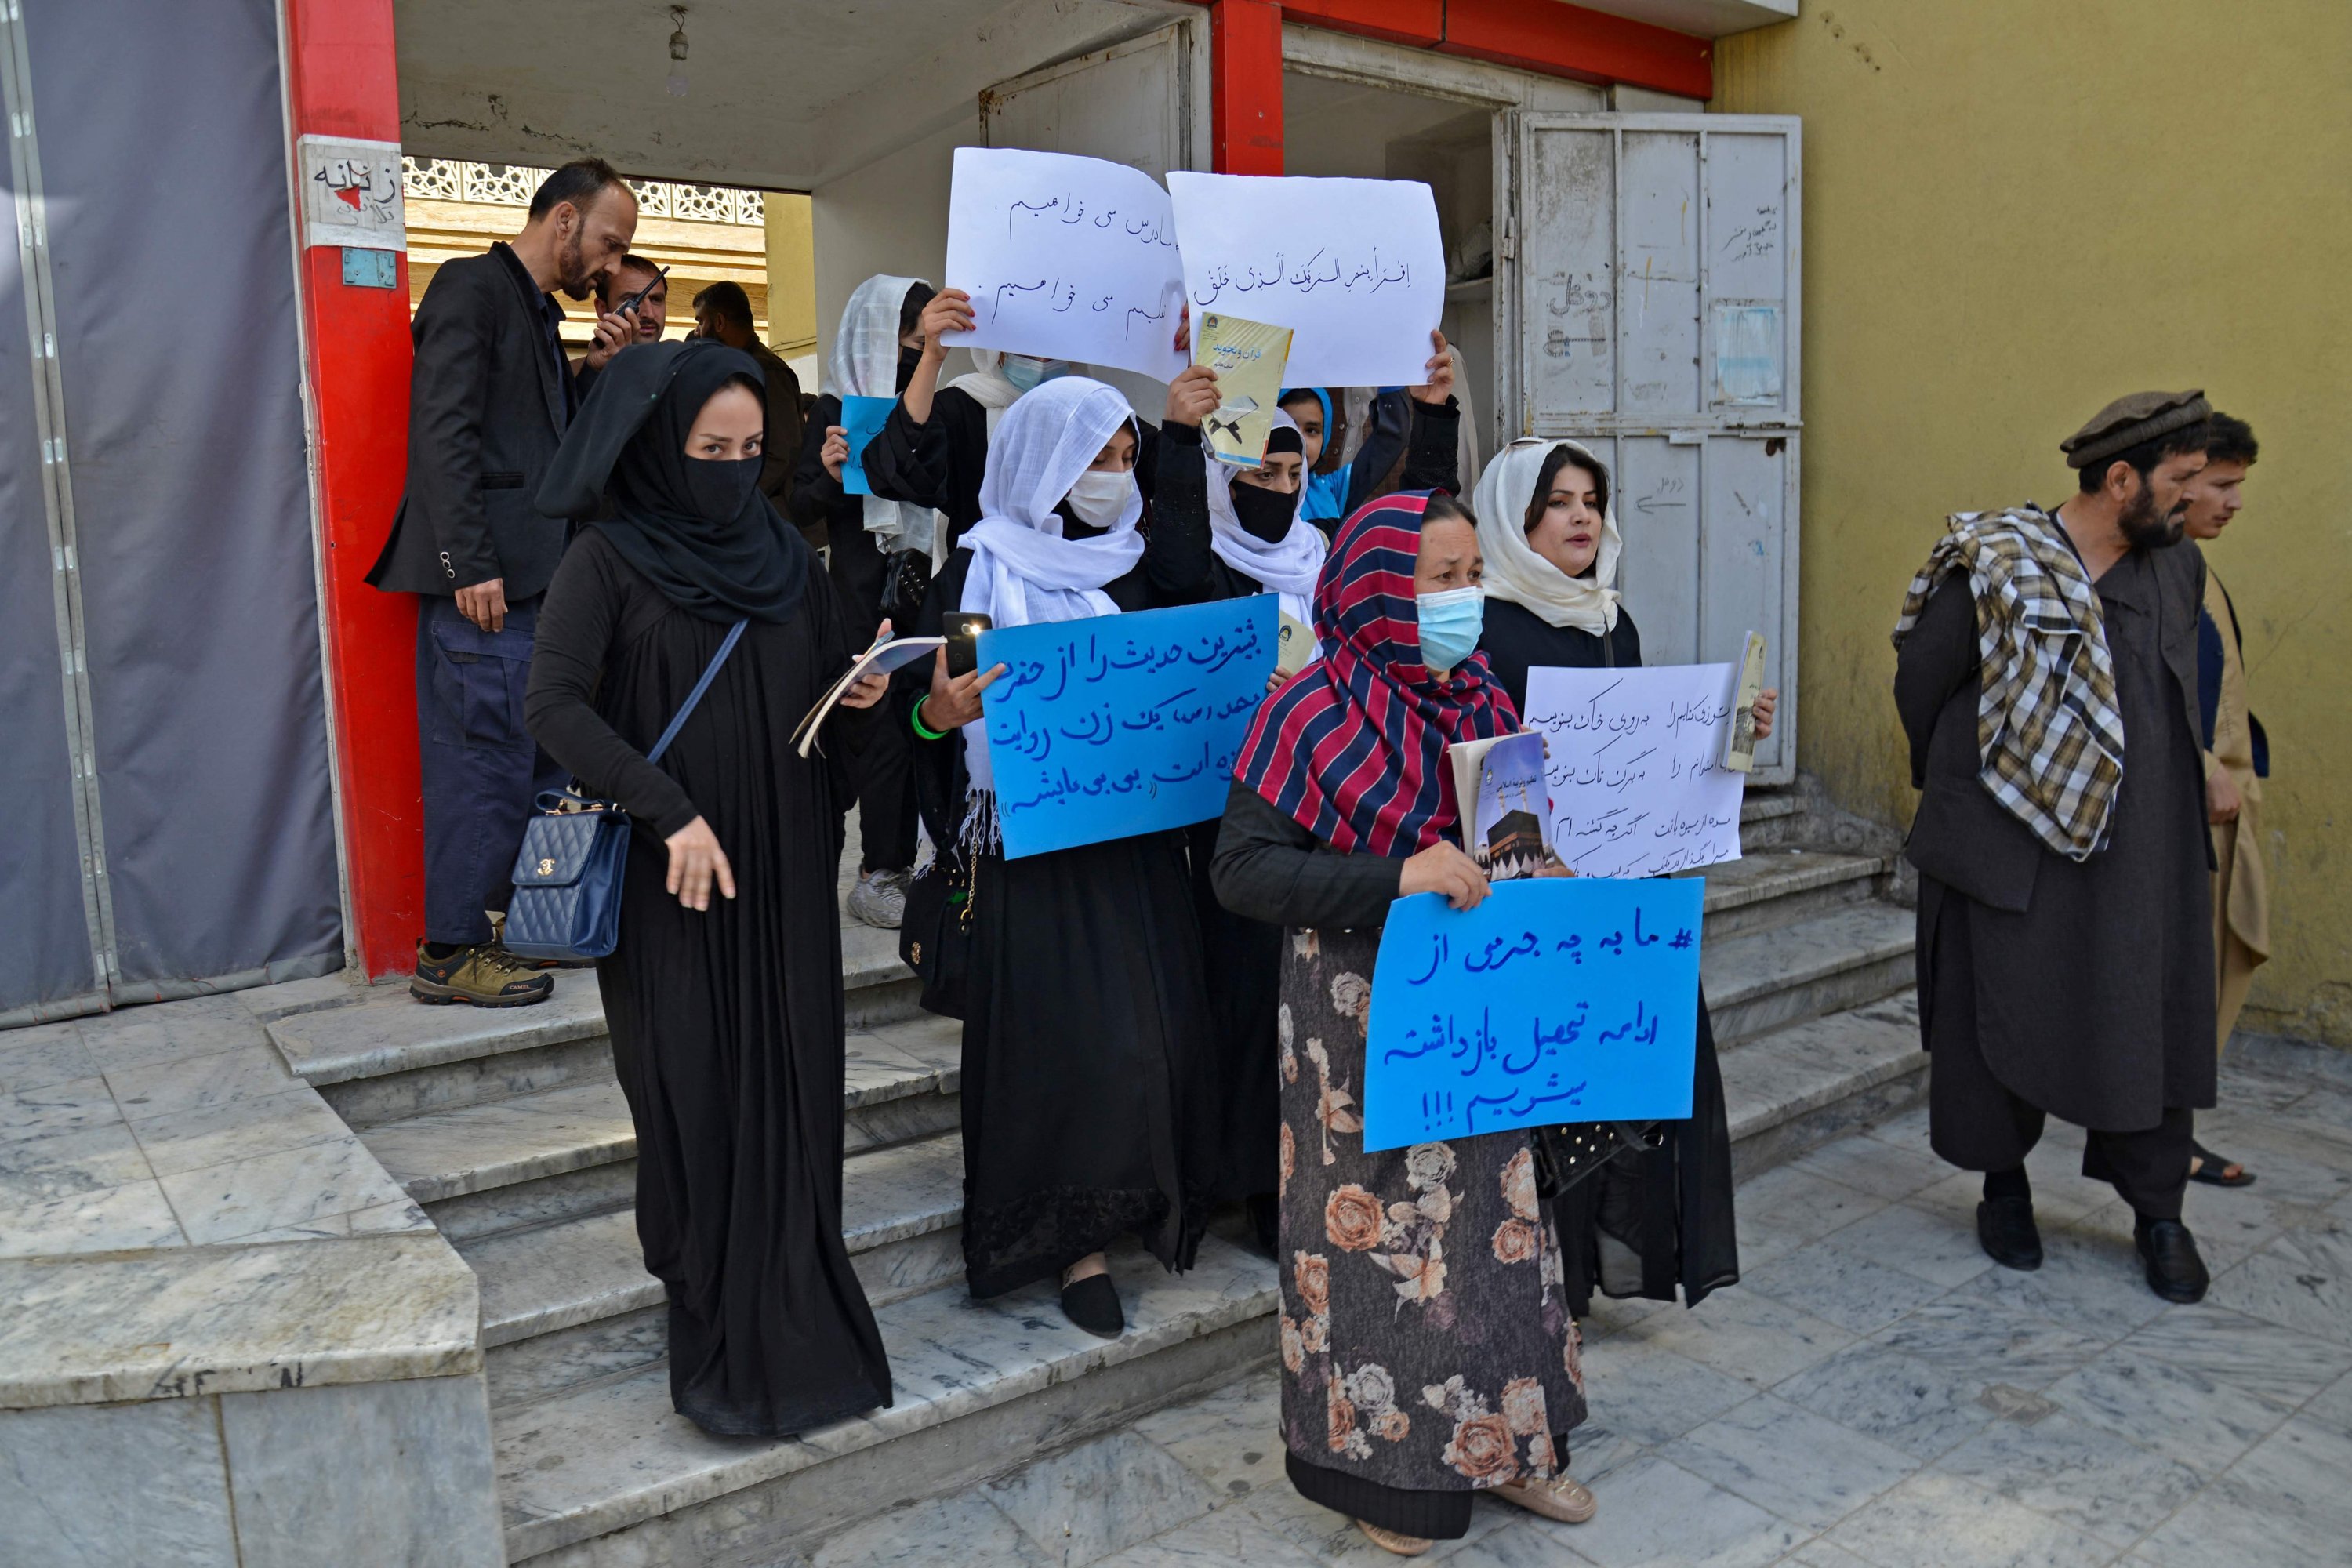 Wanita Afghanistan ambil bagian dalam protes di luar Kementerian Pendidikan di Kabul menuntut agar sekolah menengah dibuka kembali untuk anak perempuan, Afghanistan, 26 Maret 2022, (AFP Photo)